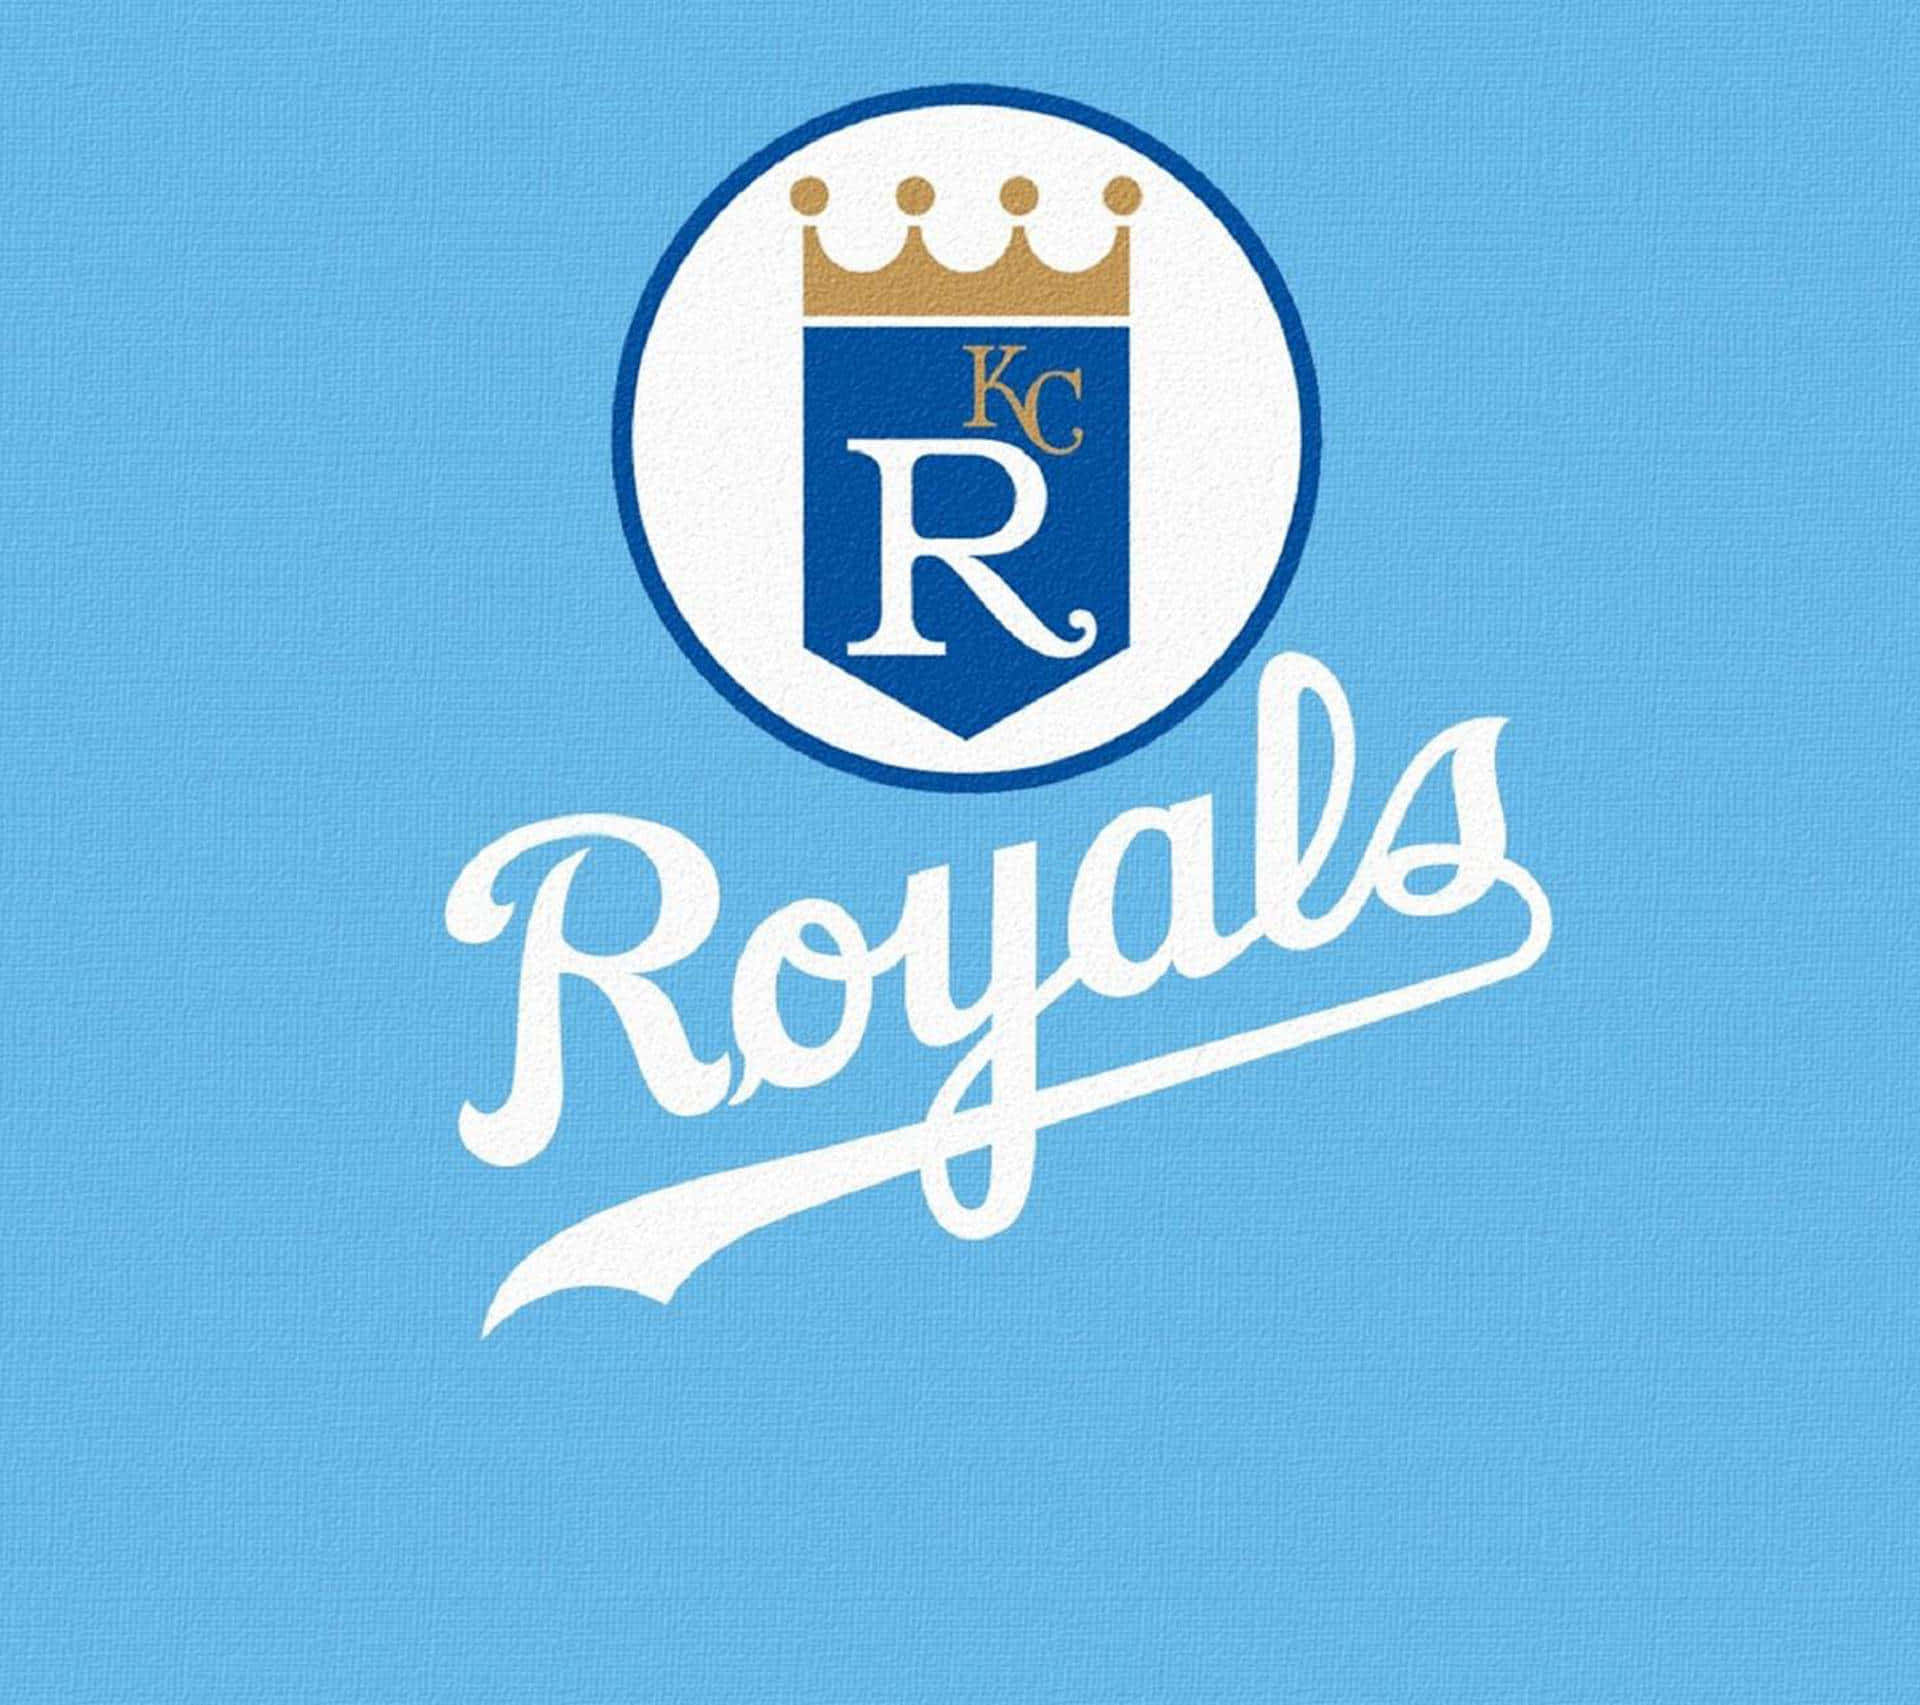 Kansas City Royals ser ud til at gå hele vejen i 2020. Wallpaper